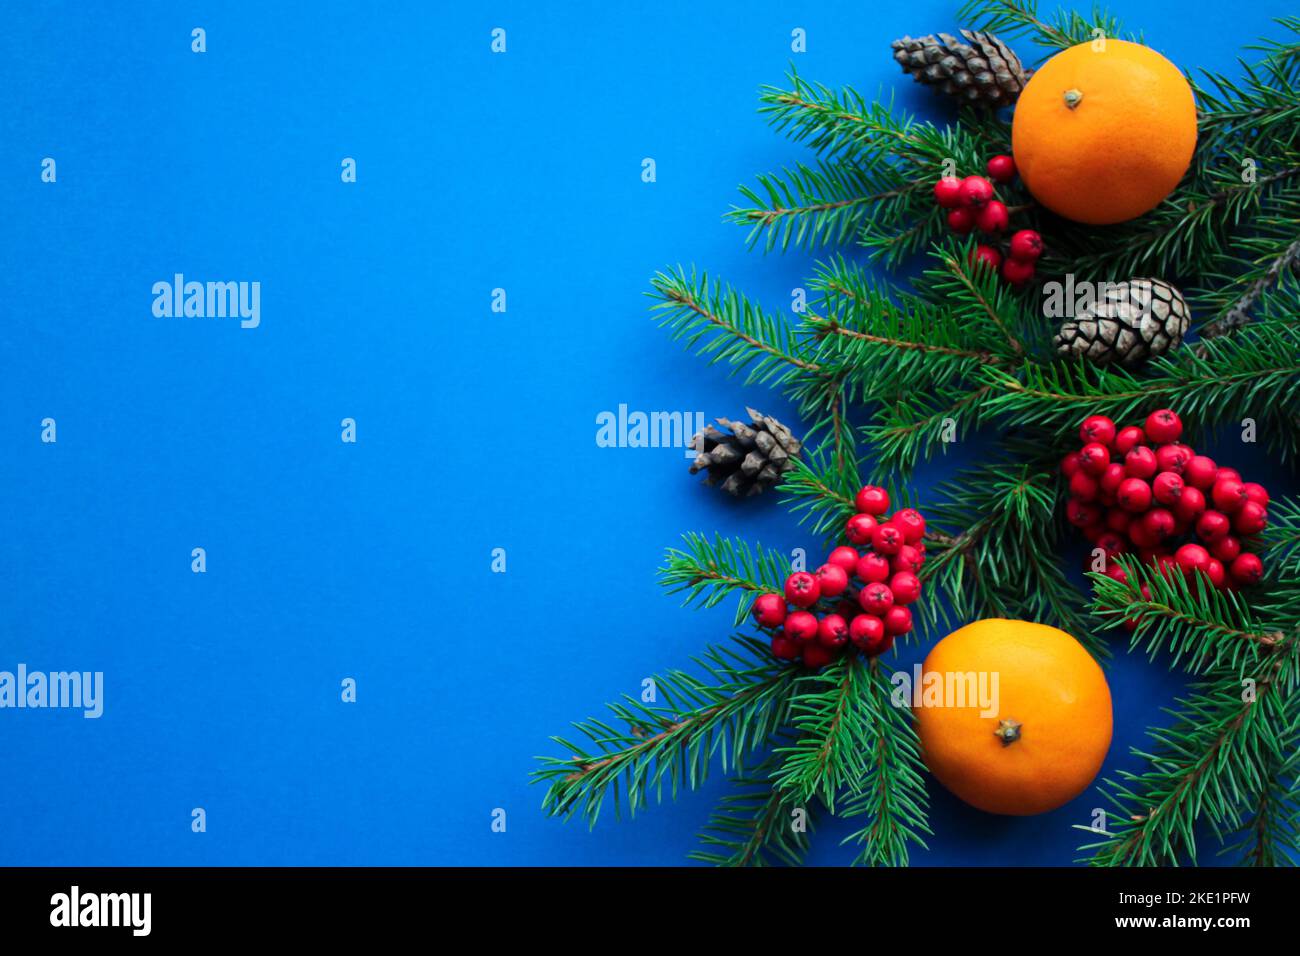 Lo spirito del Natale: Rami di abete, coni, bacche di rowan rosso brillante e tangerini arancioni su uno sfondo blu scuro luminoso con spazio per il testo Foto Stock